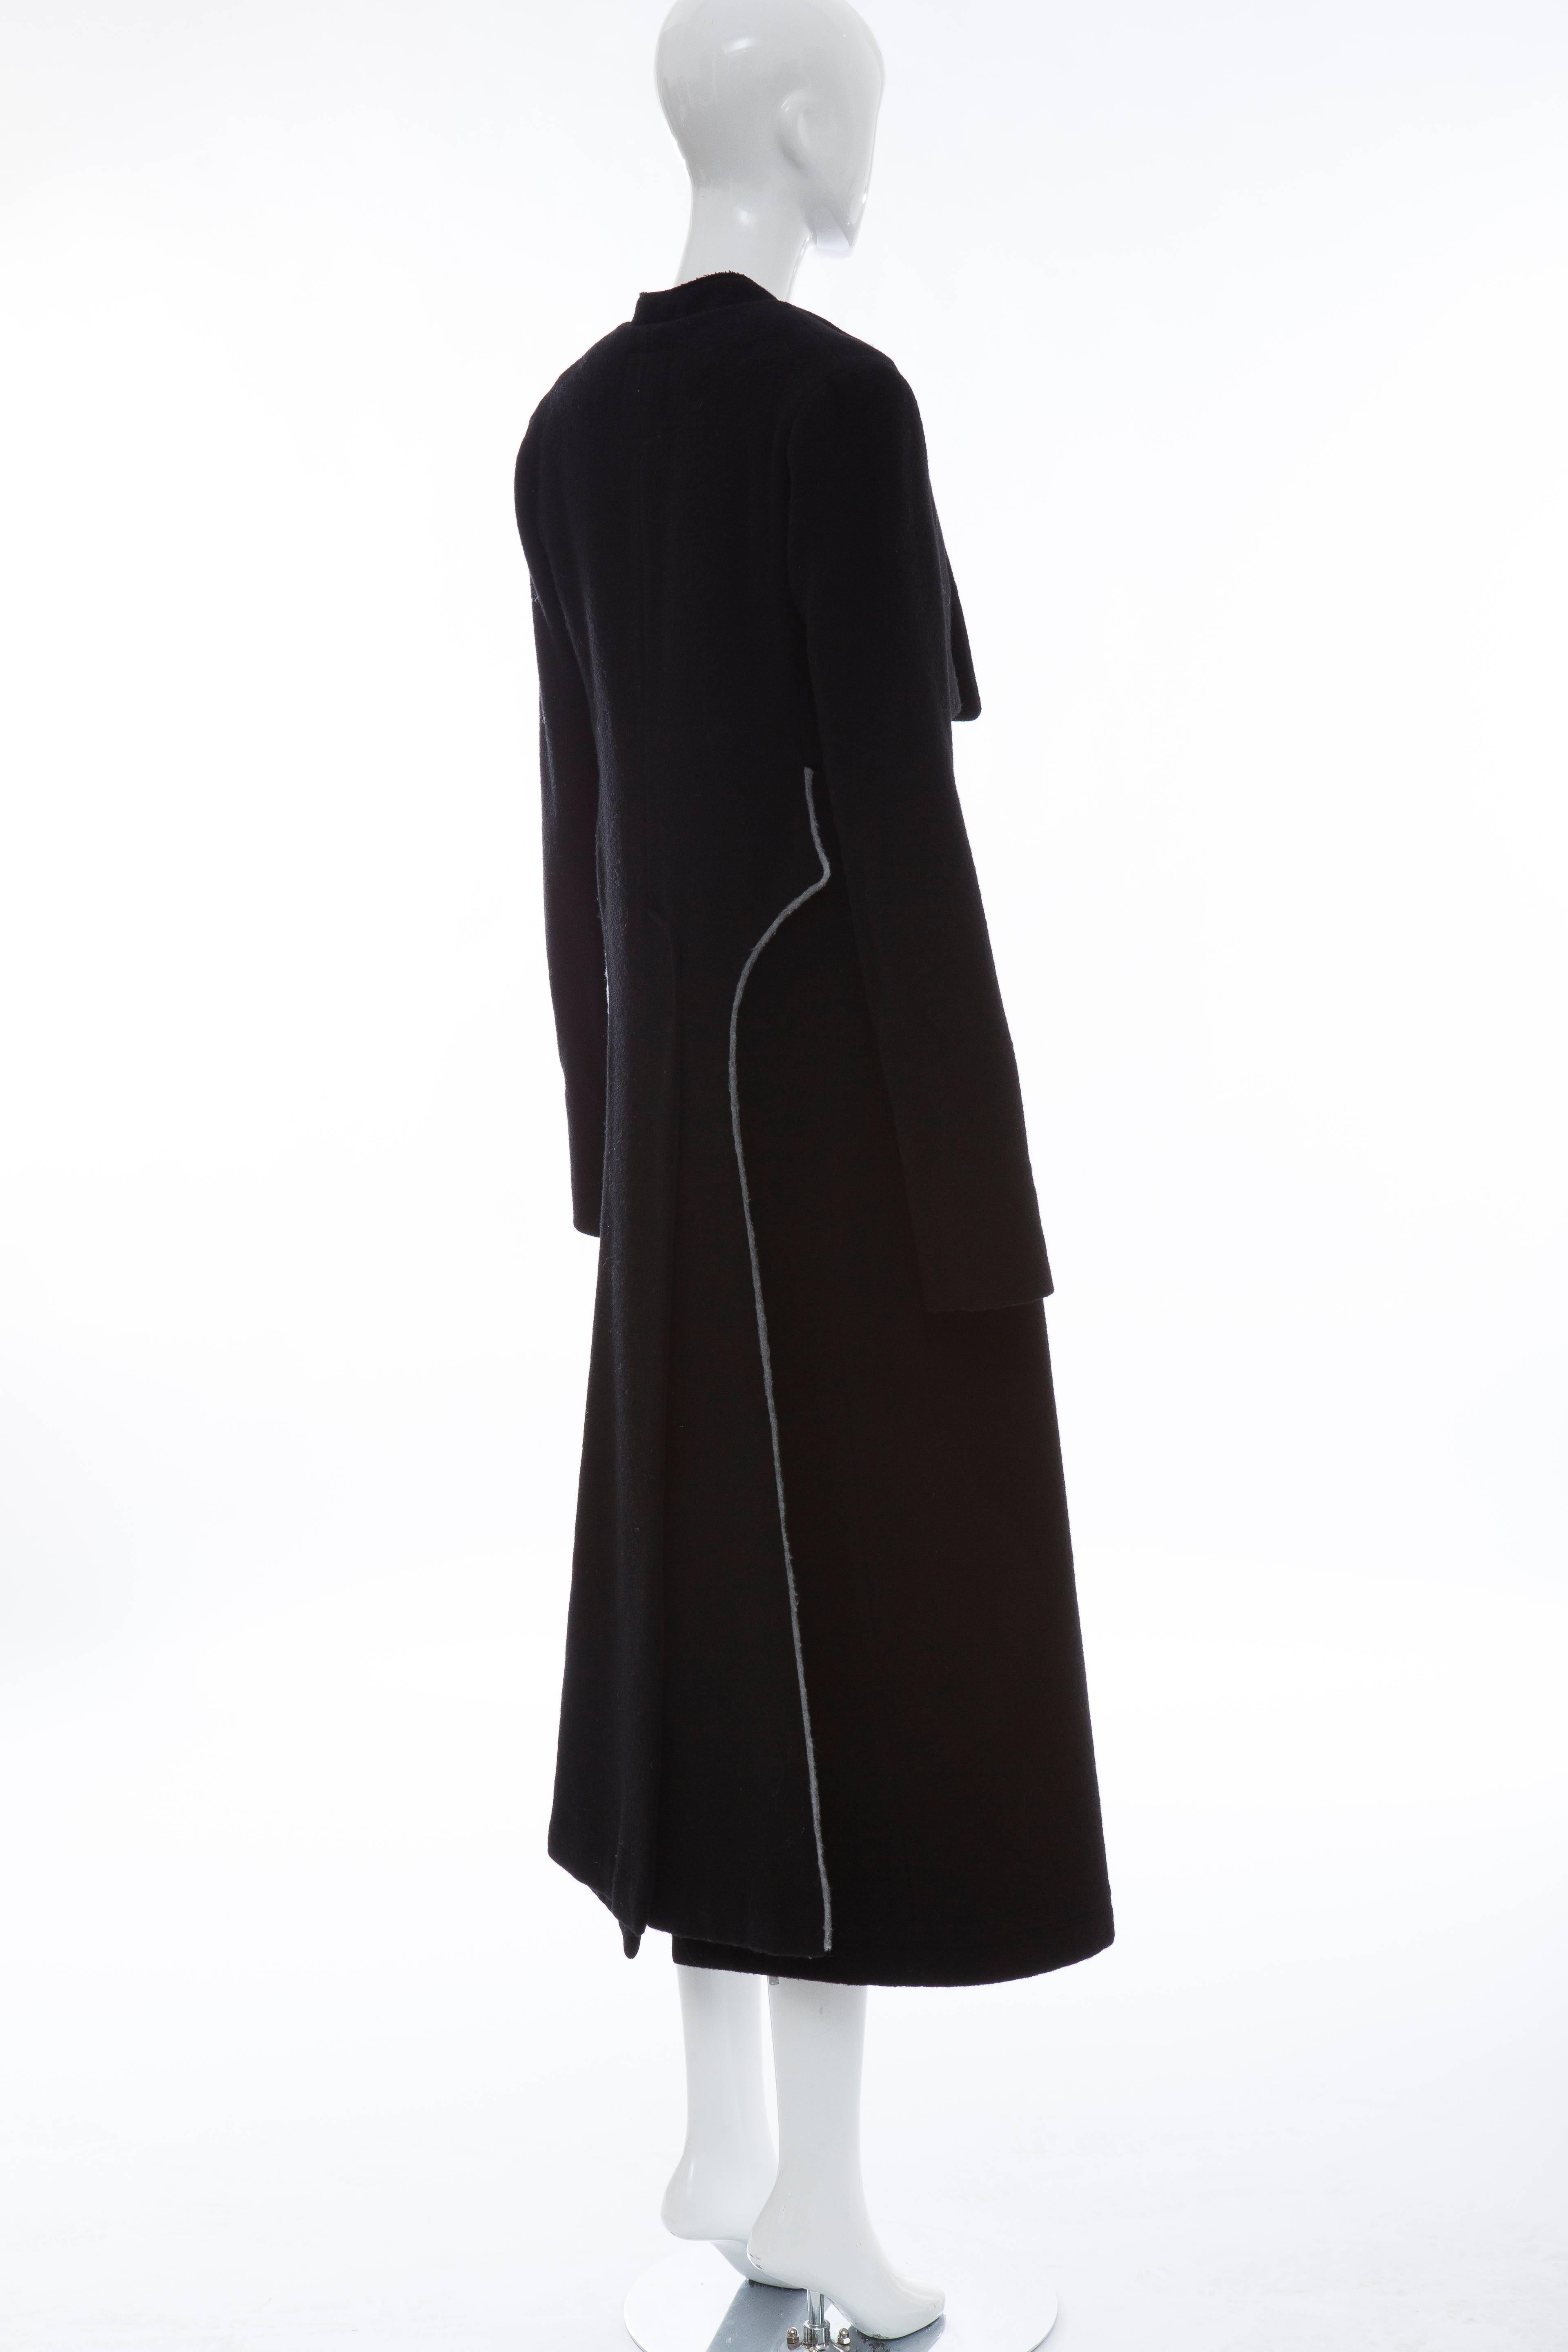 Yohji Yamamoto Black Wool Zip Front Jacket And Vest Ensemble 3